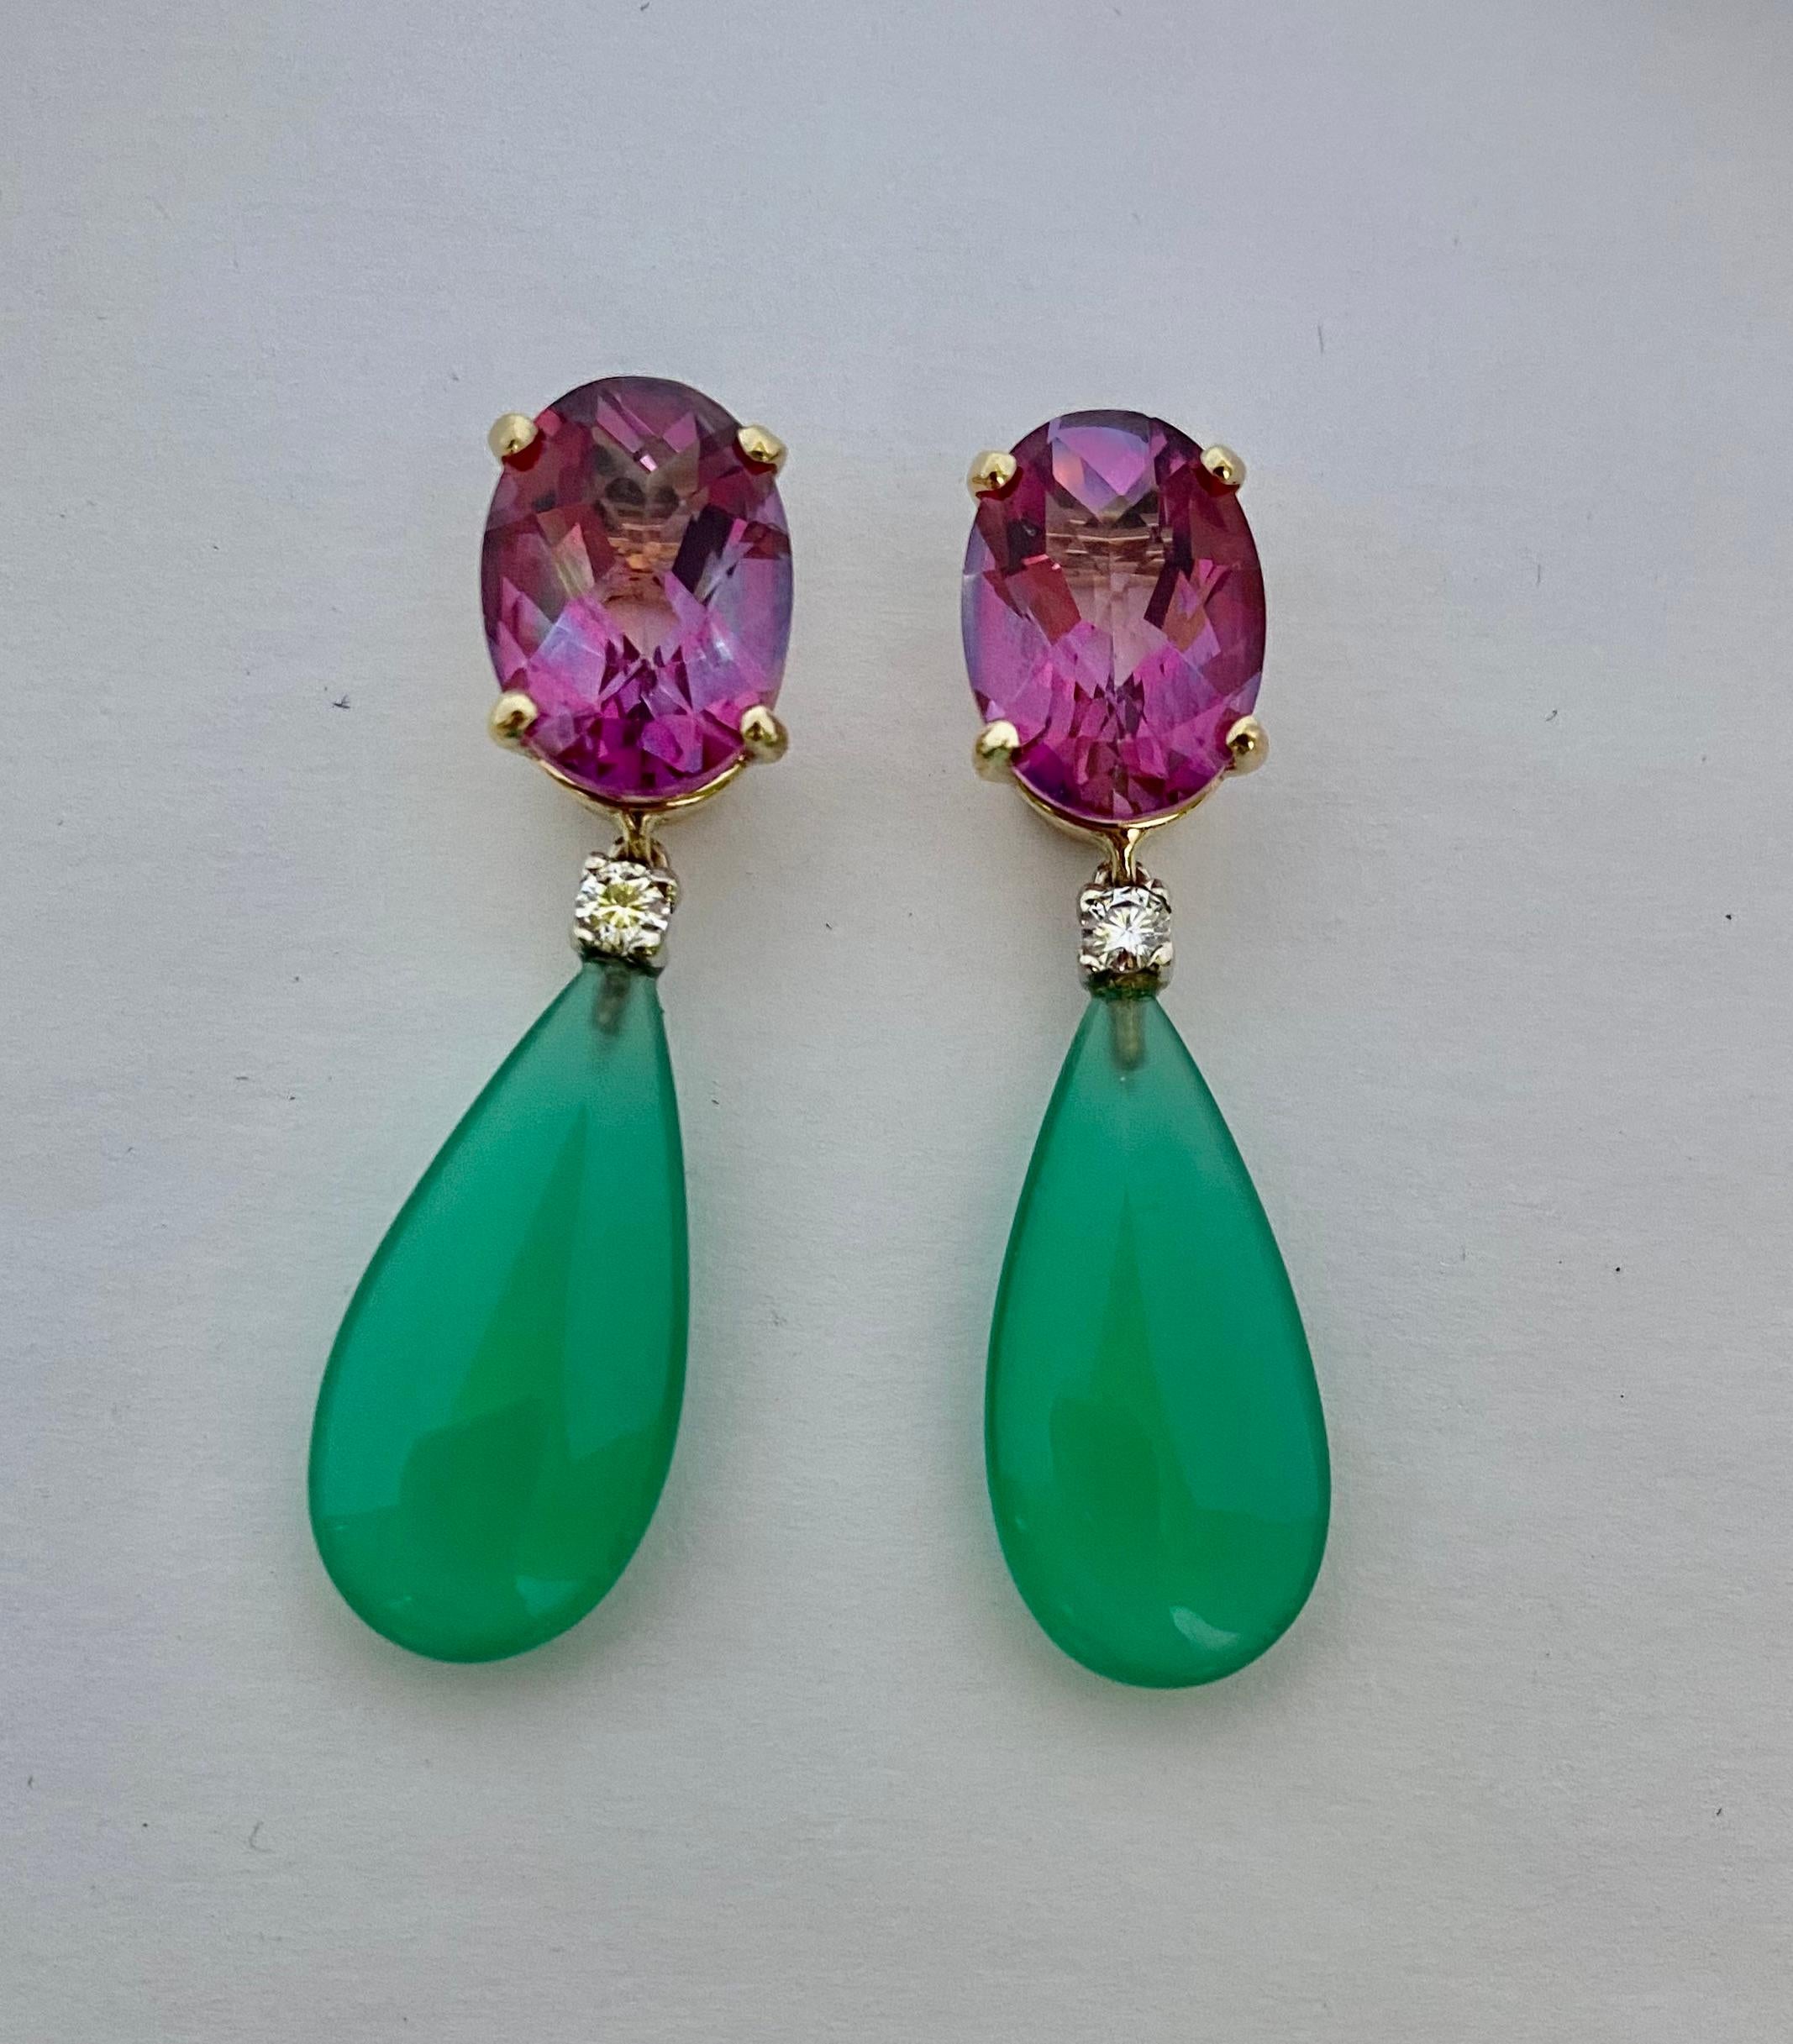 Rosa Topas und grüner Onyx in einer bonbonfarbenen Kombination sind in diesen verspielten Ohrhängern zu sehen.  Die ovalen Topase sind in einem auffälligen Schachbrettschliff facettiert.  Die Edelsteine sind gut geschliffen und poliert.  Die Tropfen